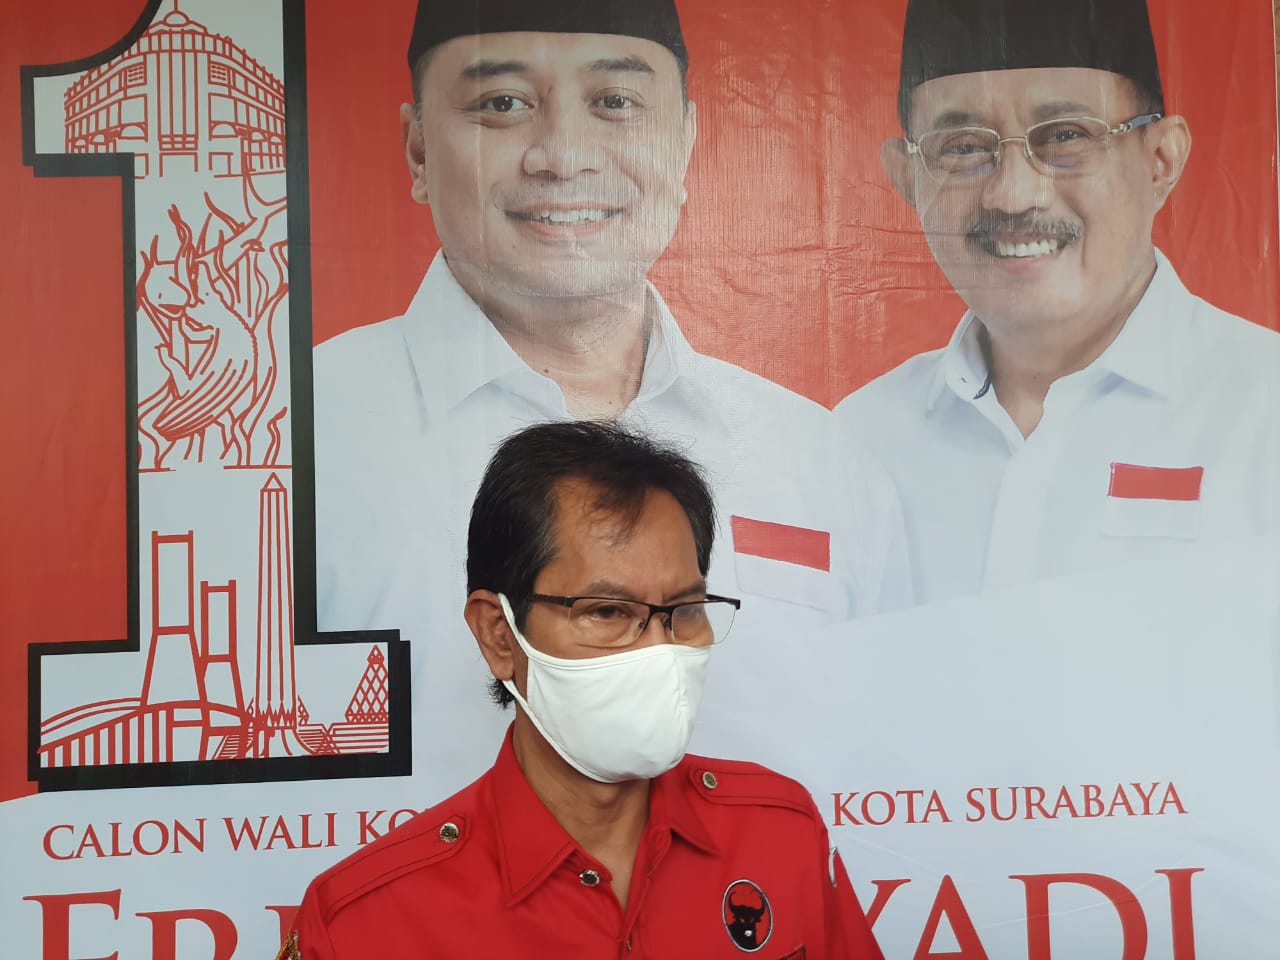 Tolak Politik Uang, Tim Pemenangan ERJI Ajak Jaga Kampung Surabaya